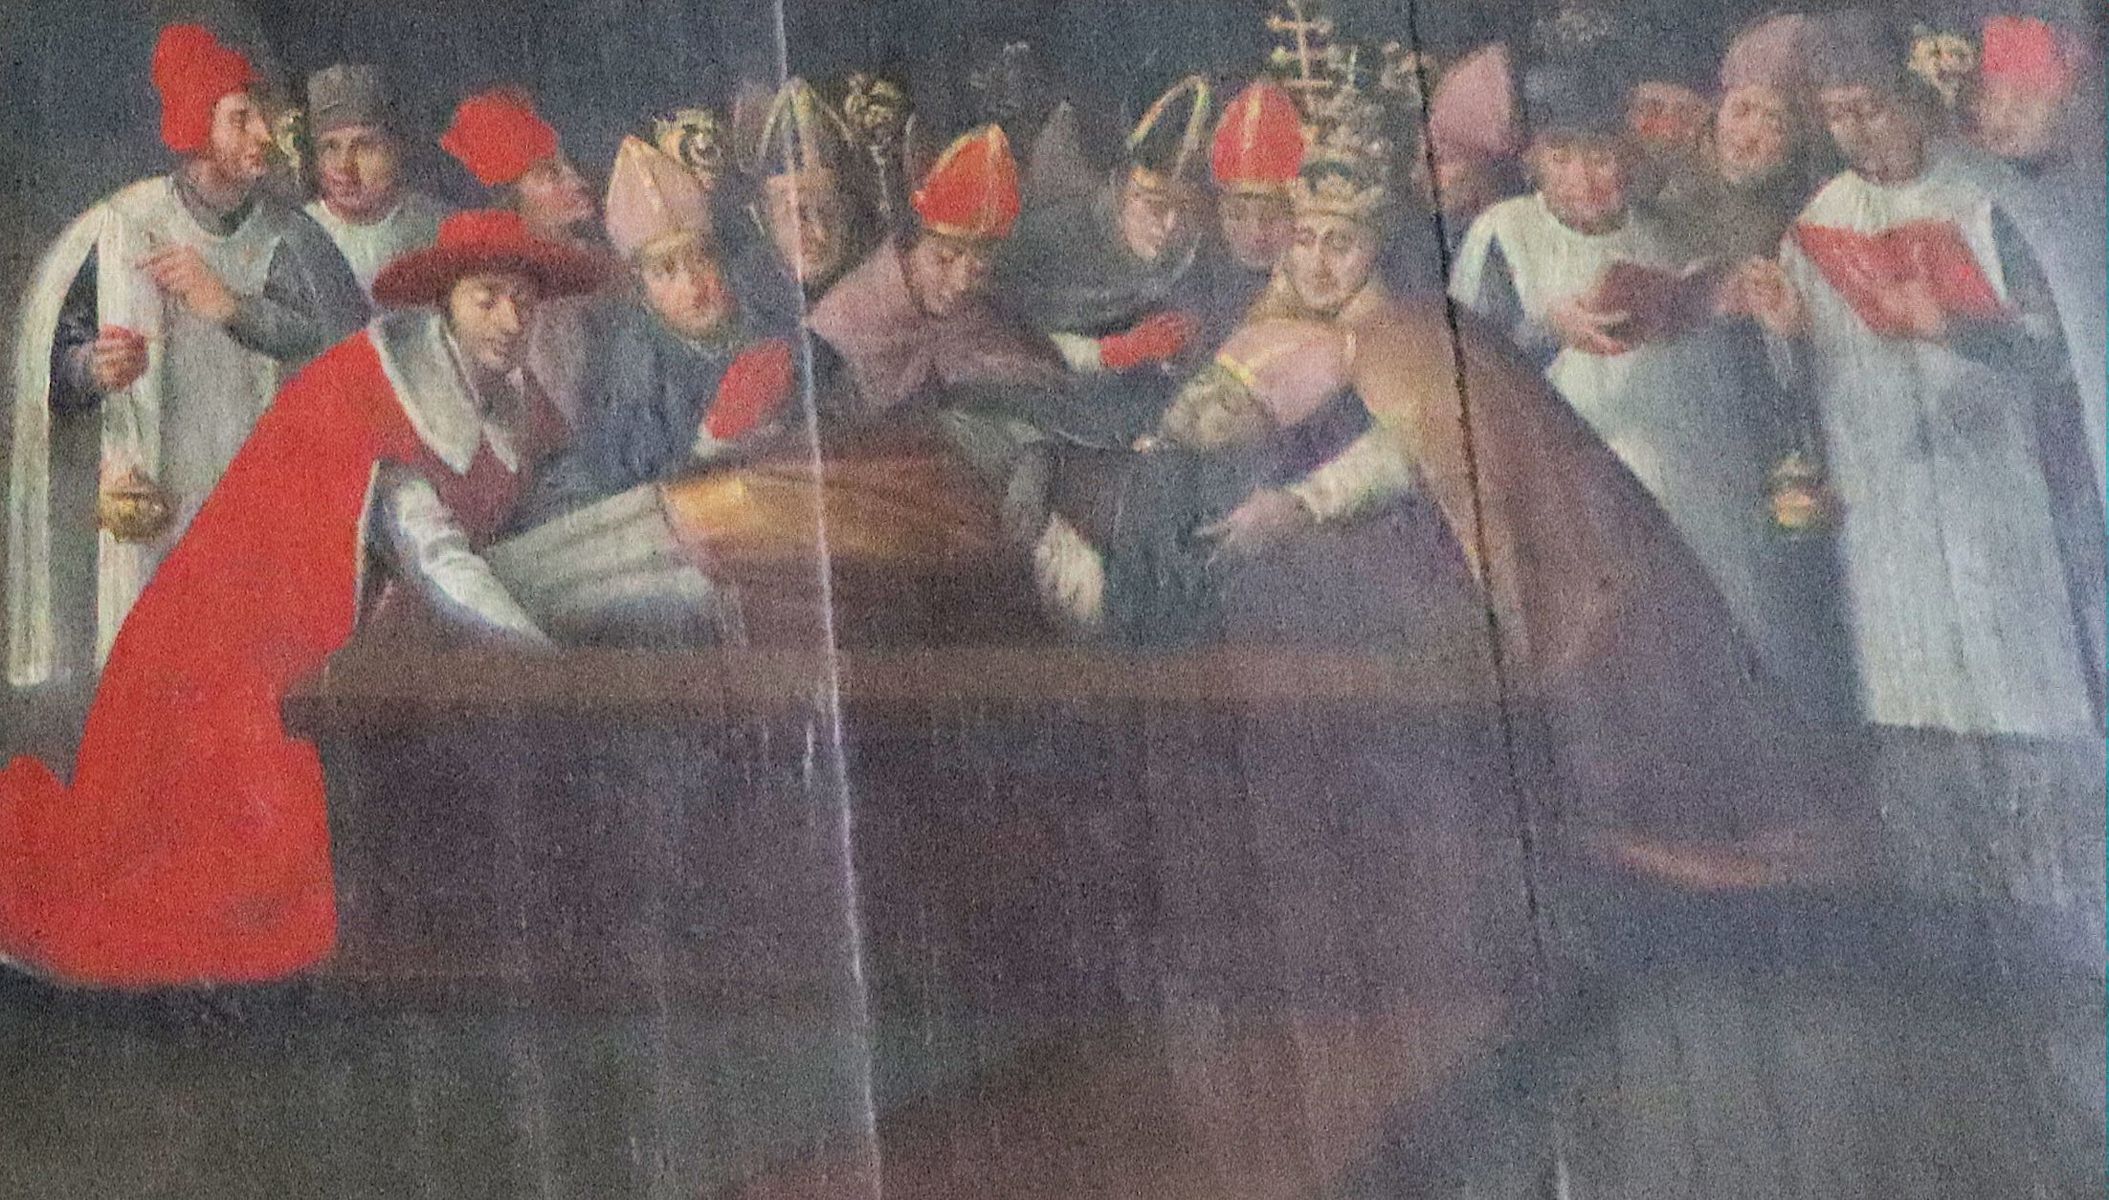 Tafelbild: Papst Leo IX. erhebt Erhards Gebeine, um 1620, in der Kirche des ehemaligen Klosters Niedermünster in Regensburg